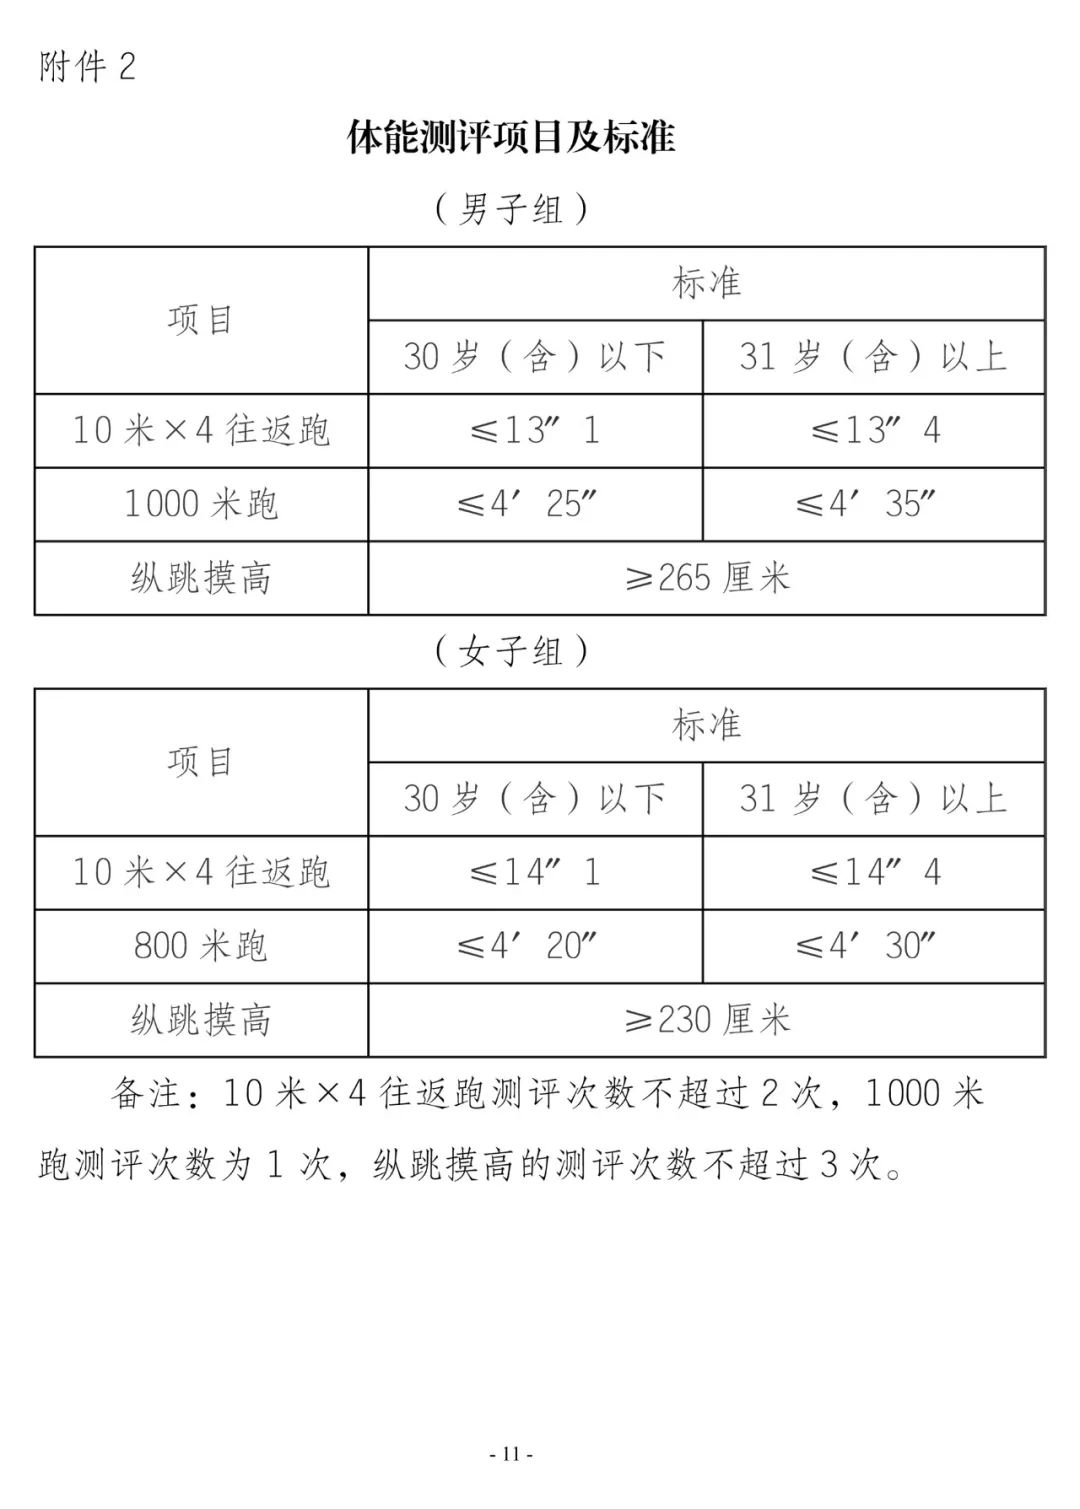 重庆市铜梁区保安服务有限公司关于公开招聘派往重庆市铜梁区公安局护卫安保队员的公告